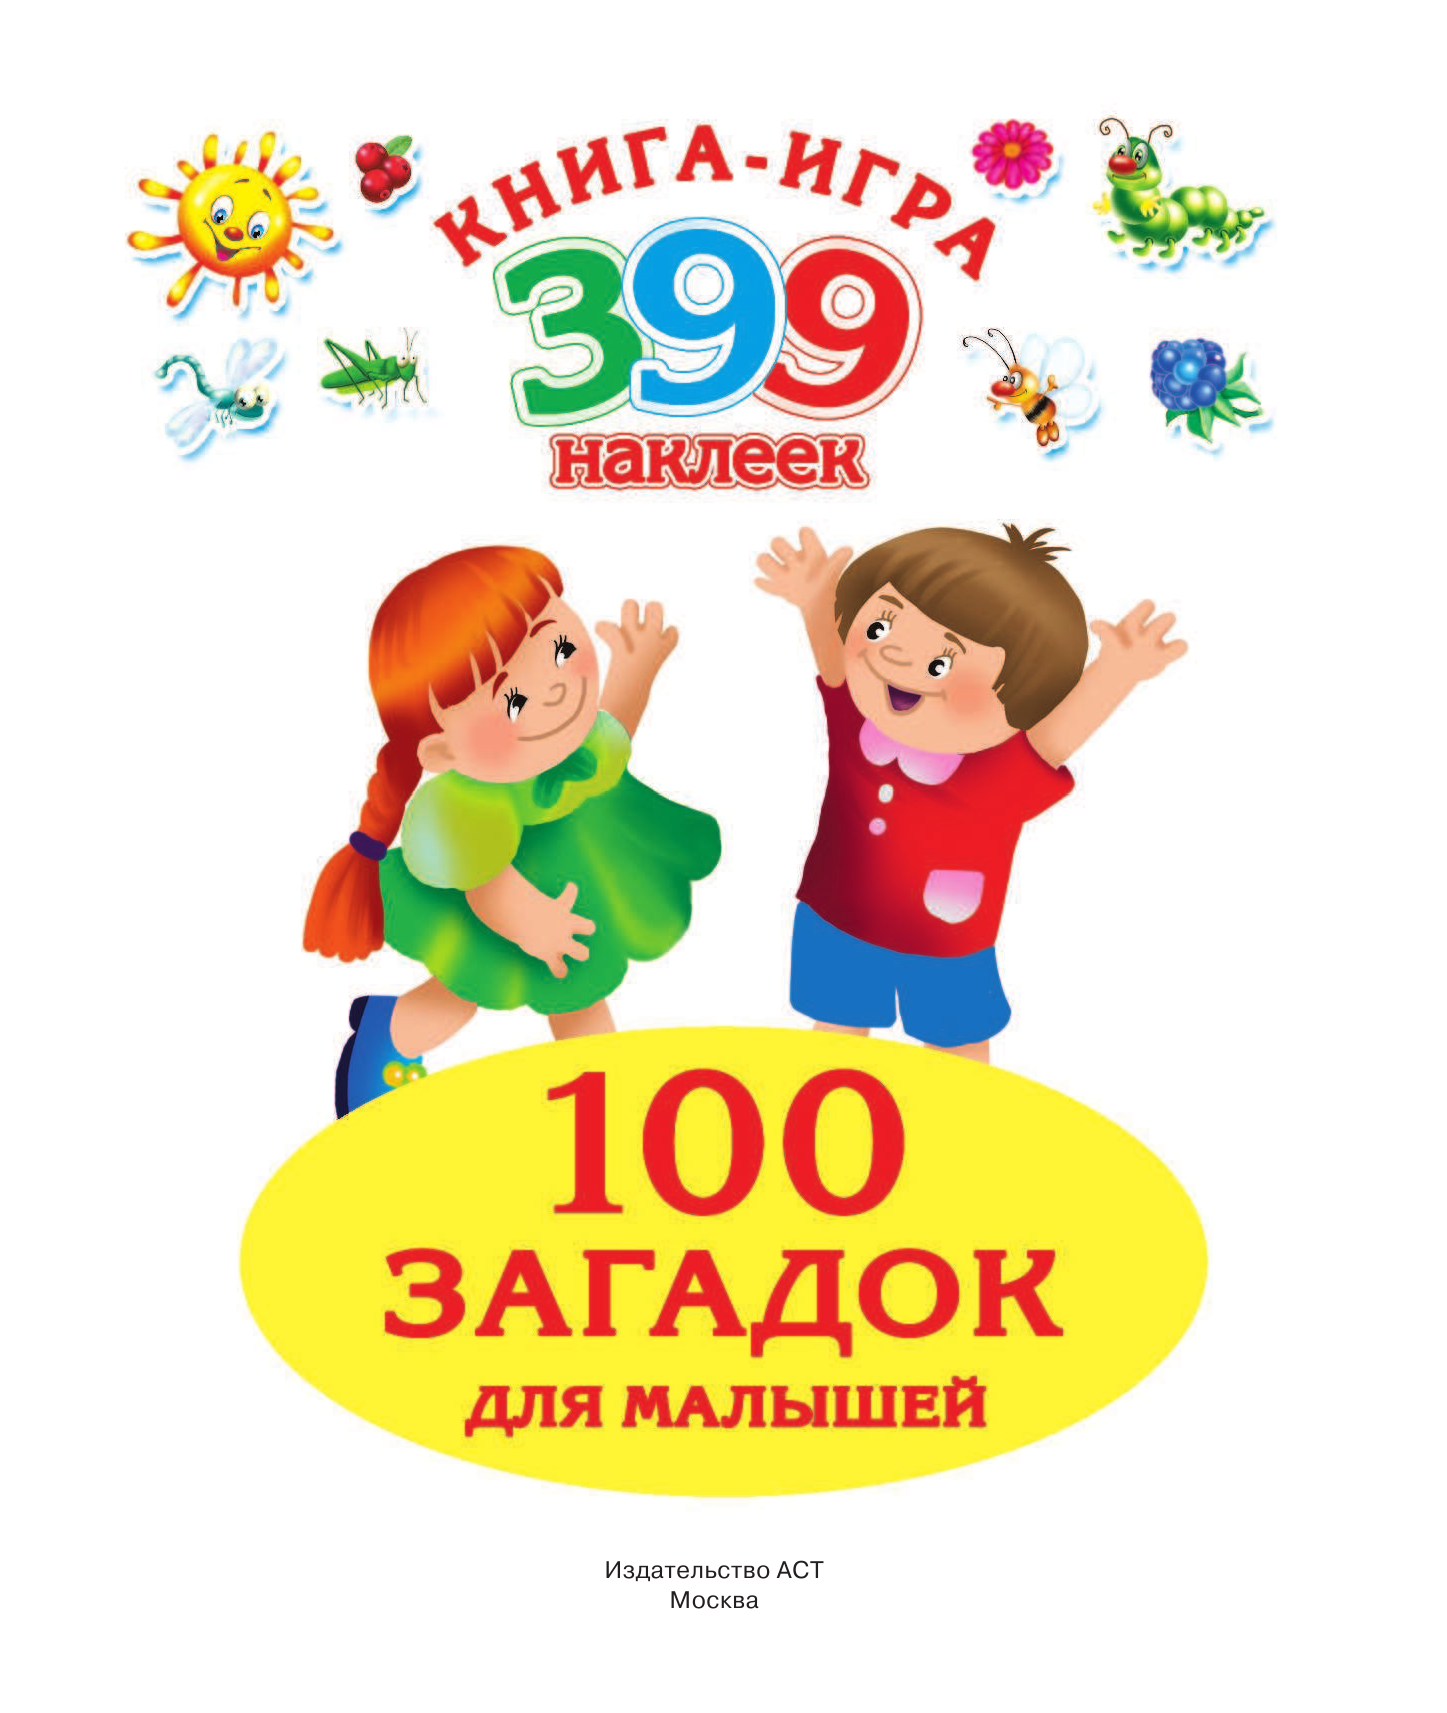 Виноградова Екатерина 100 загадок для малышей - страница 2